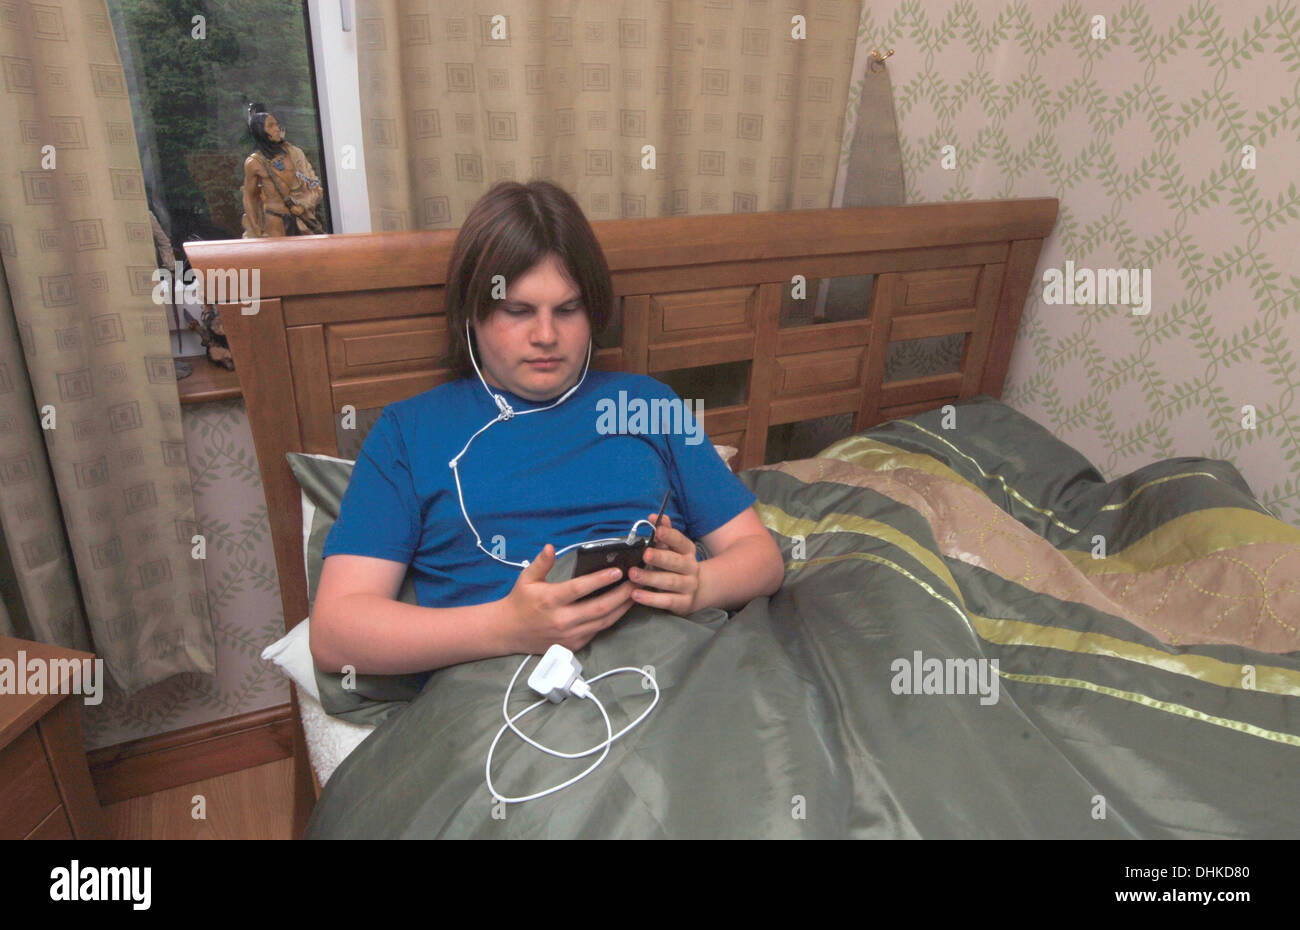 Ein männlicher Jugendlicher in seinem Bett liegt, über sein Mobiltelefon. Stockfoto